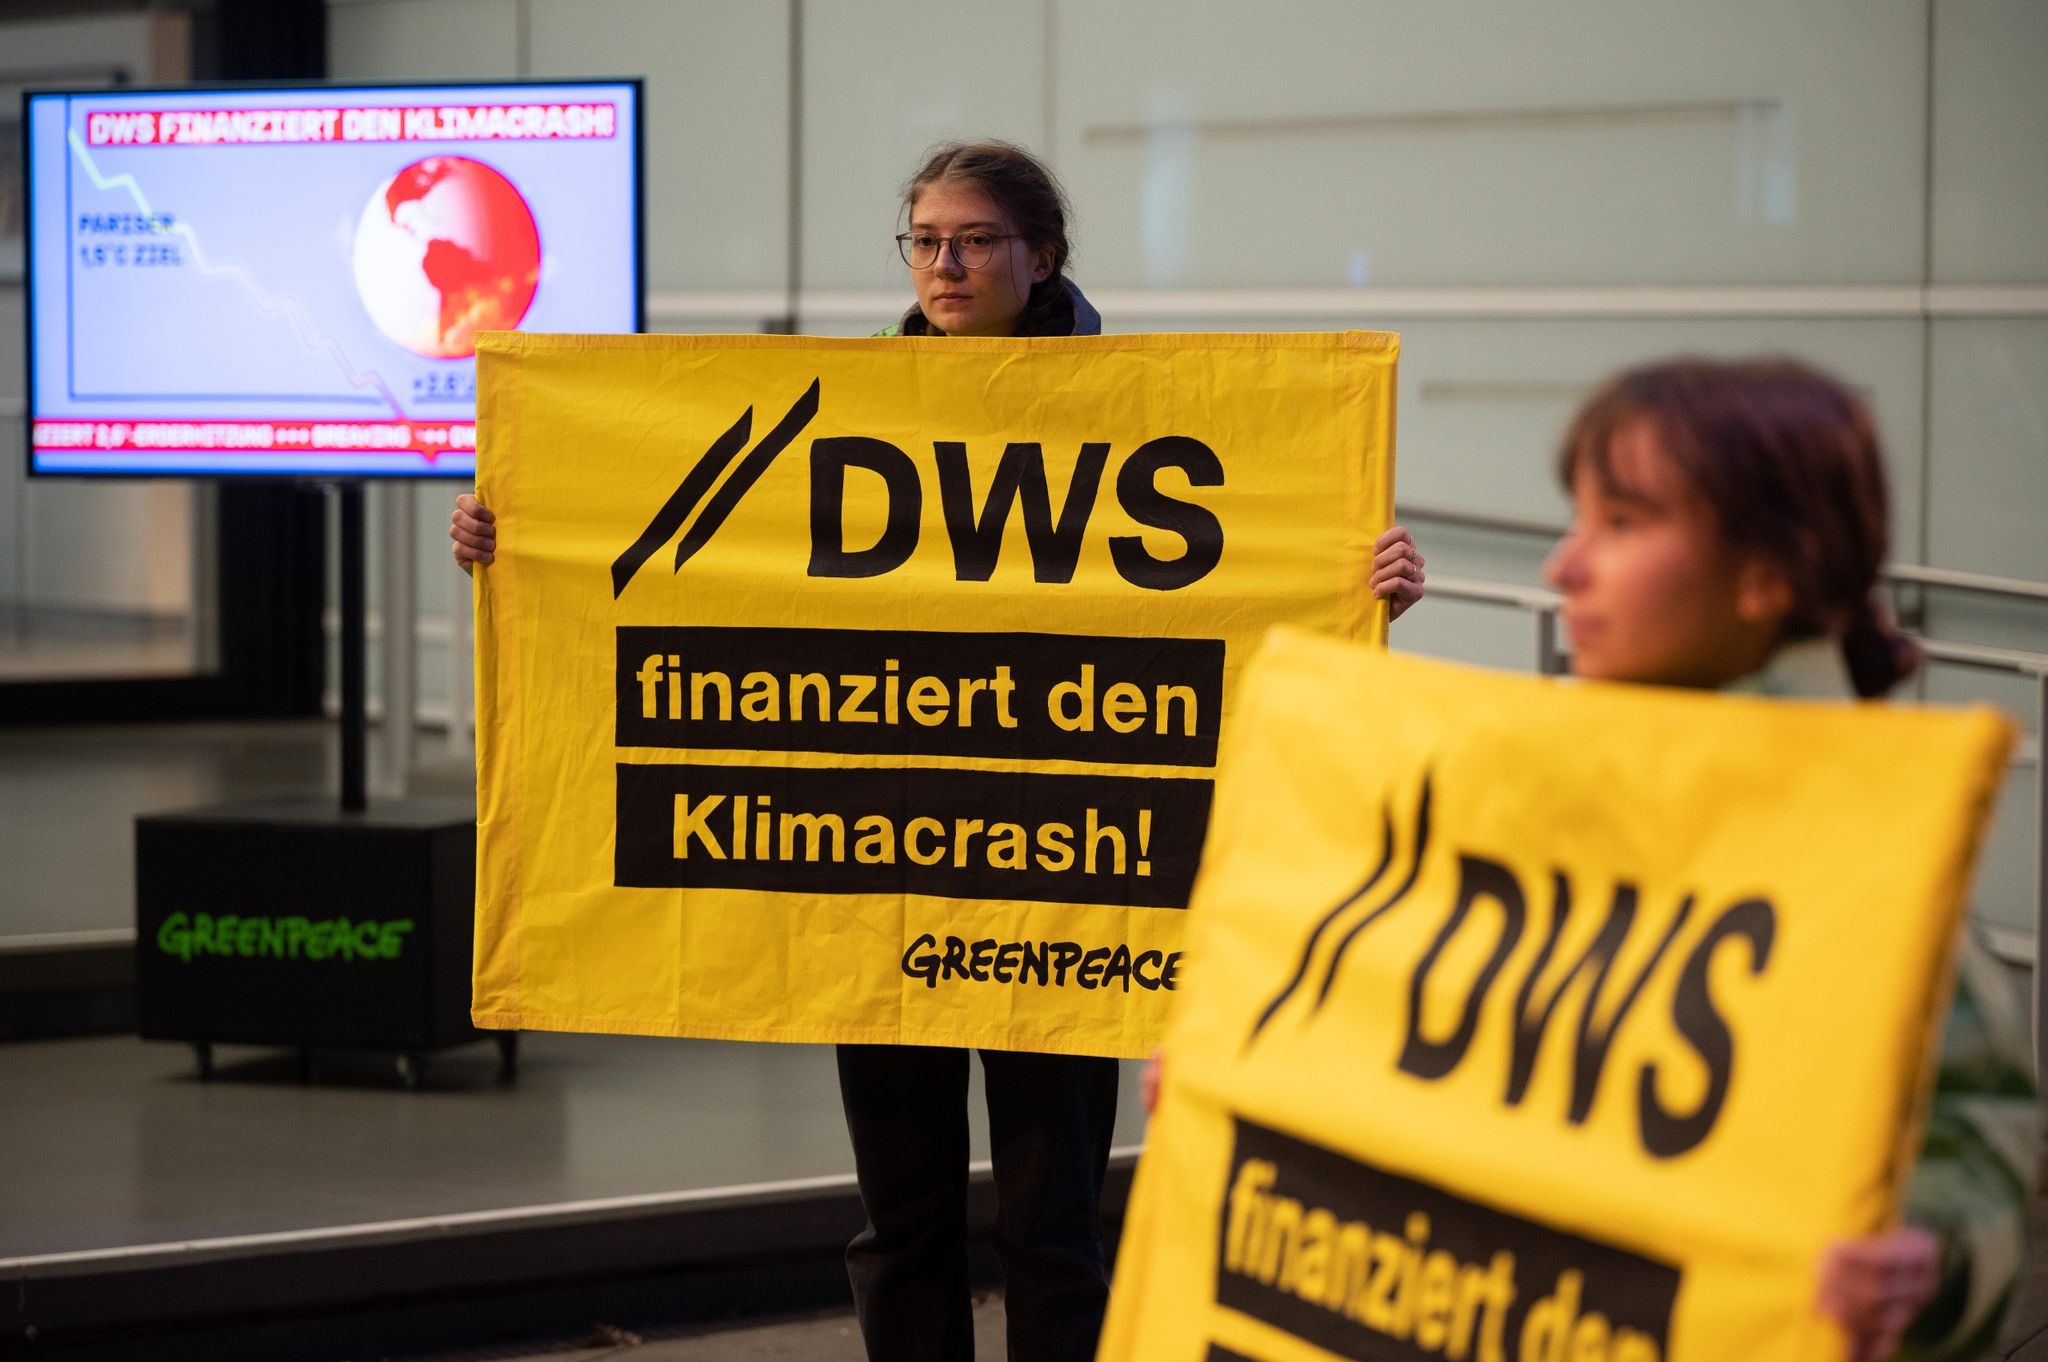 Demonstrierende halten vor dem Eingang des Vermögensverwalters DWS Schilder.